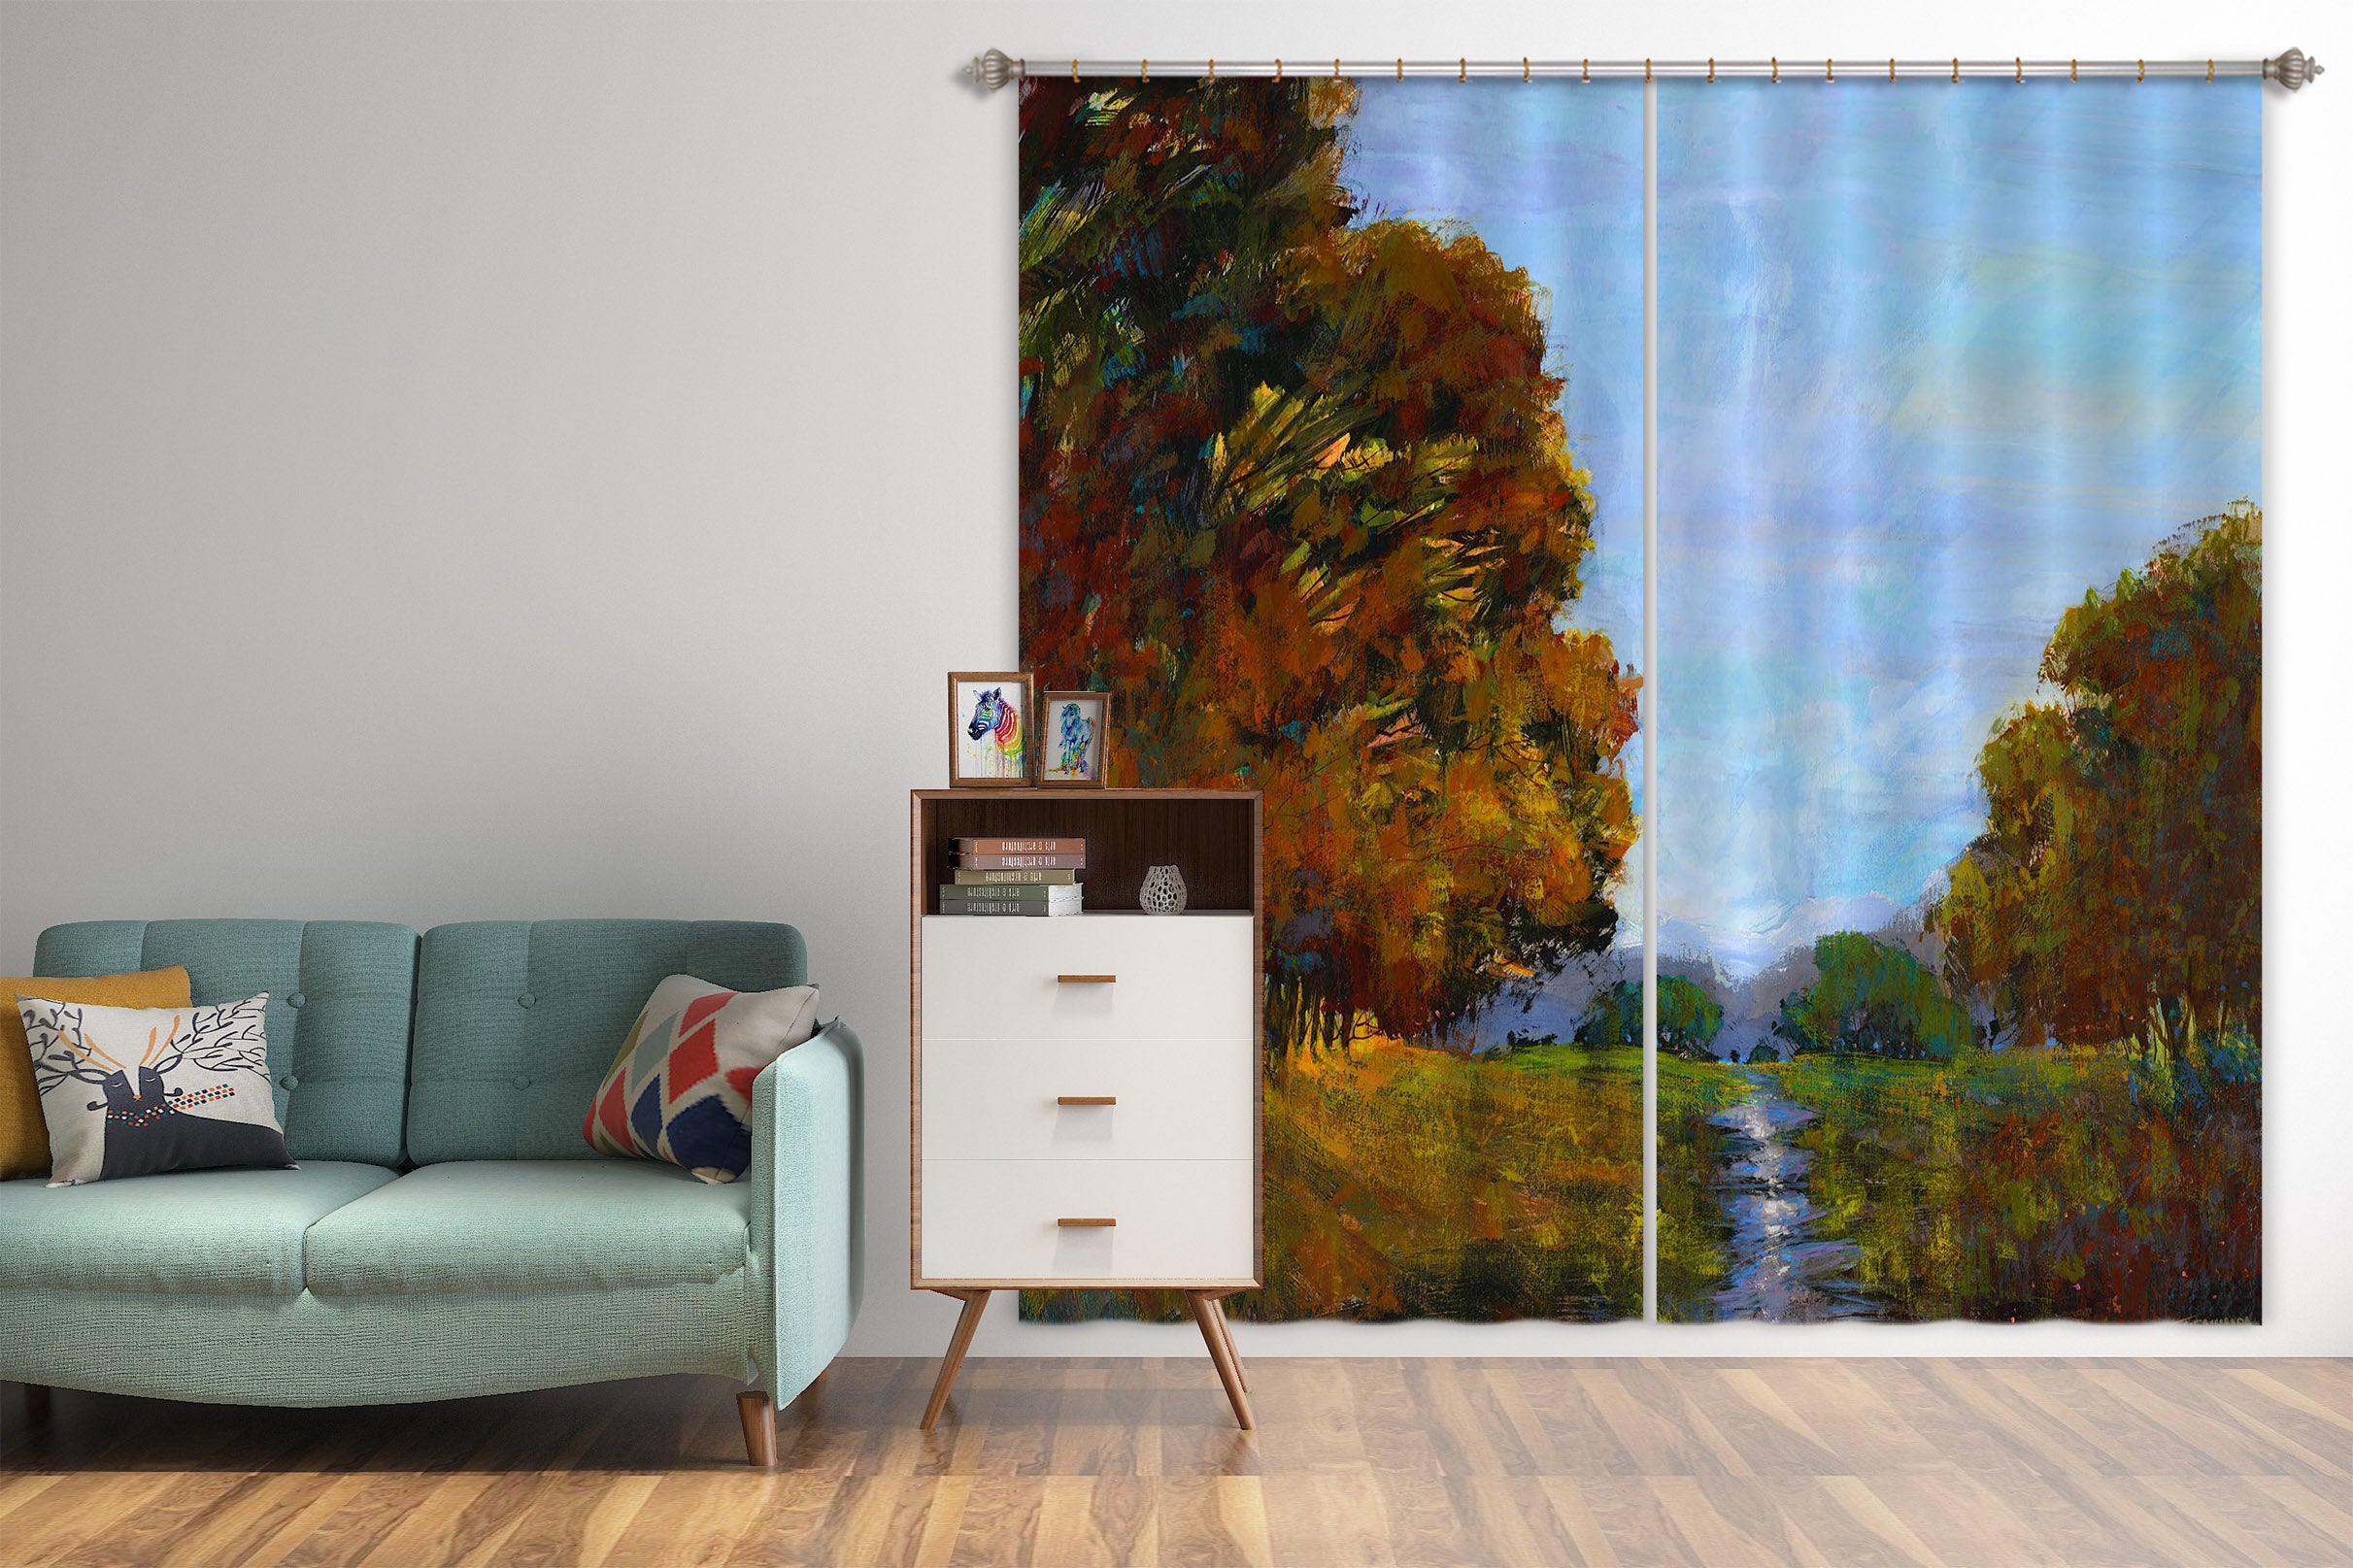 3D Winding River 217 Michael Tienhaara Curtain Curtains Drapes